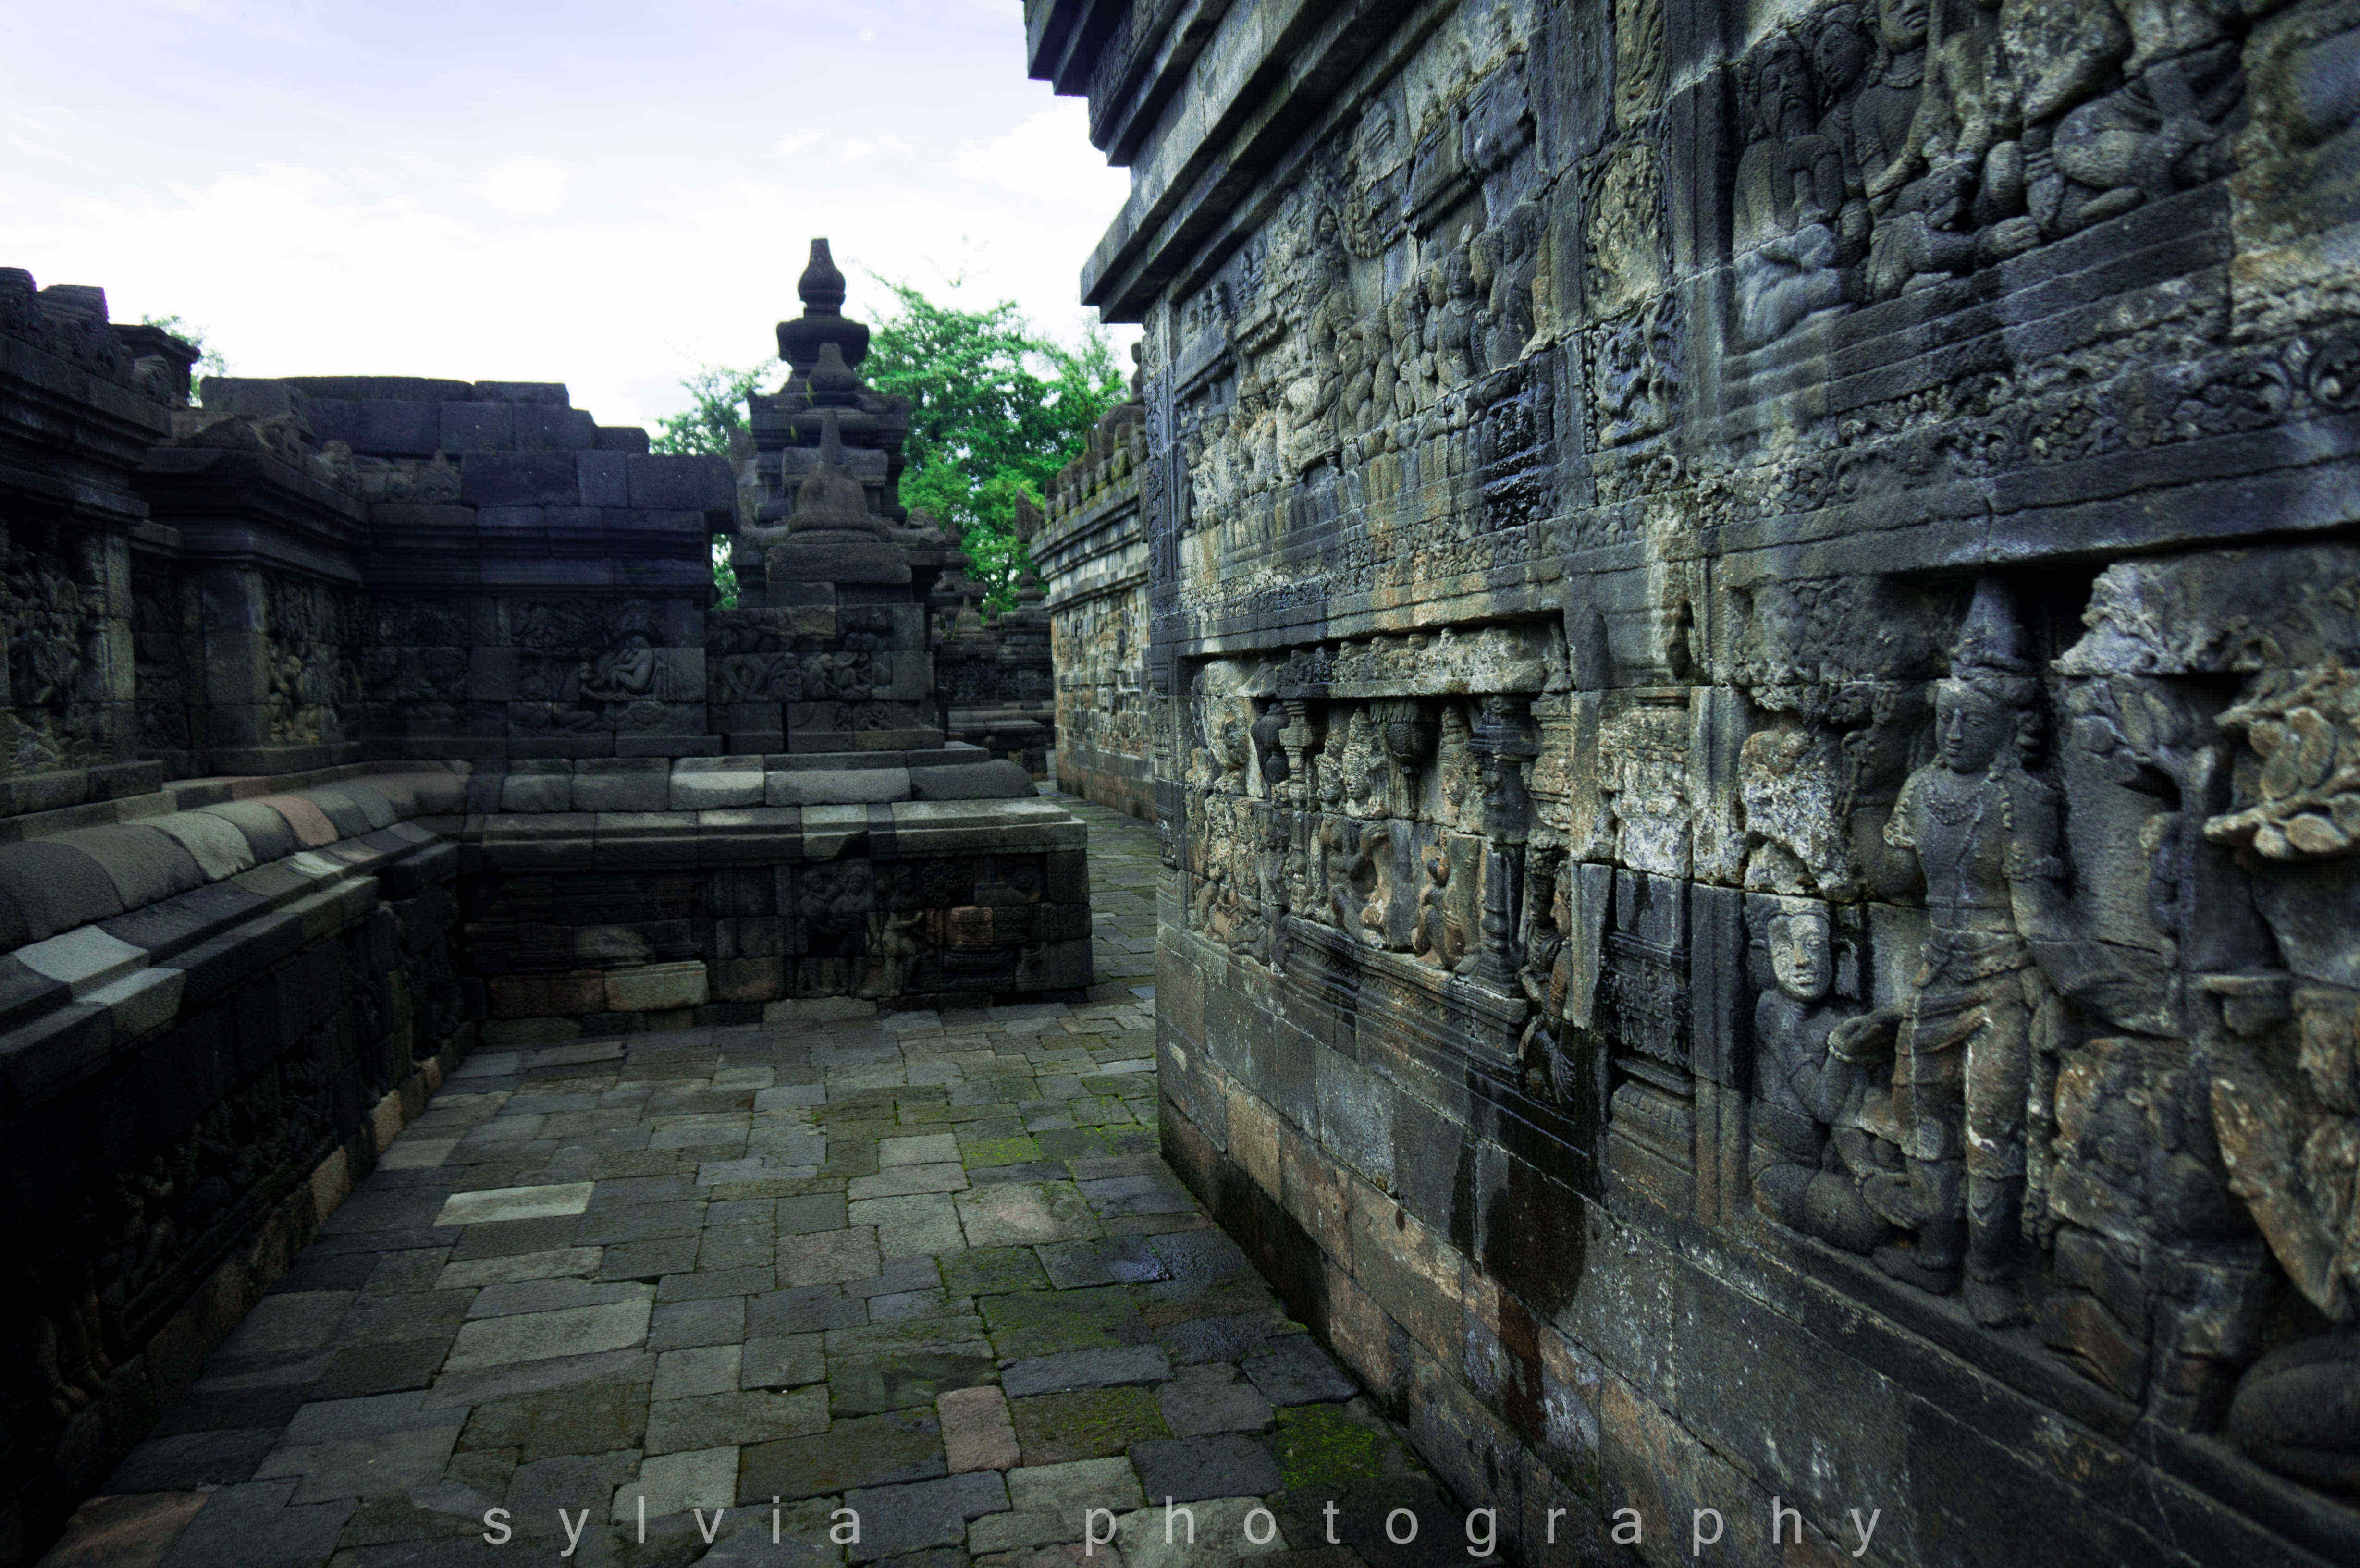 【印尼印象】婆罗浮屠--山顶上的佛塔,穿越千年